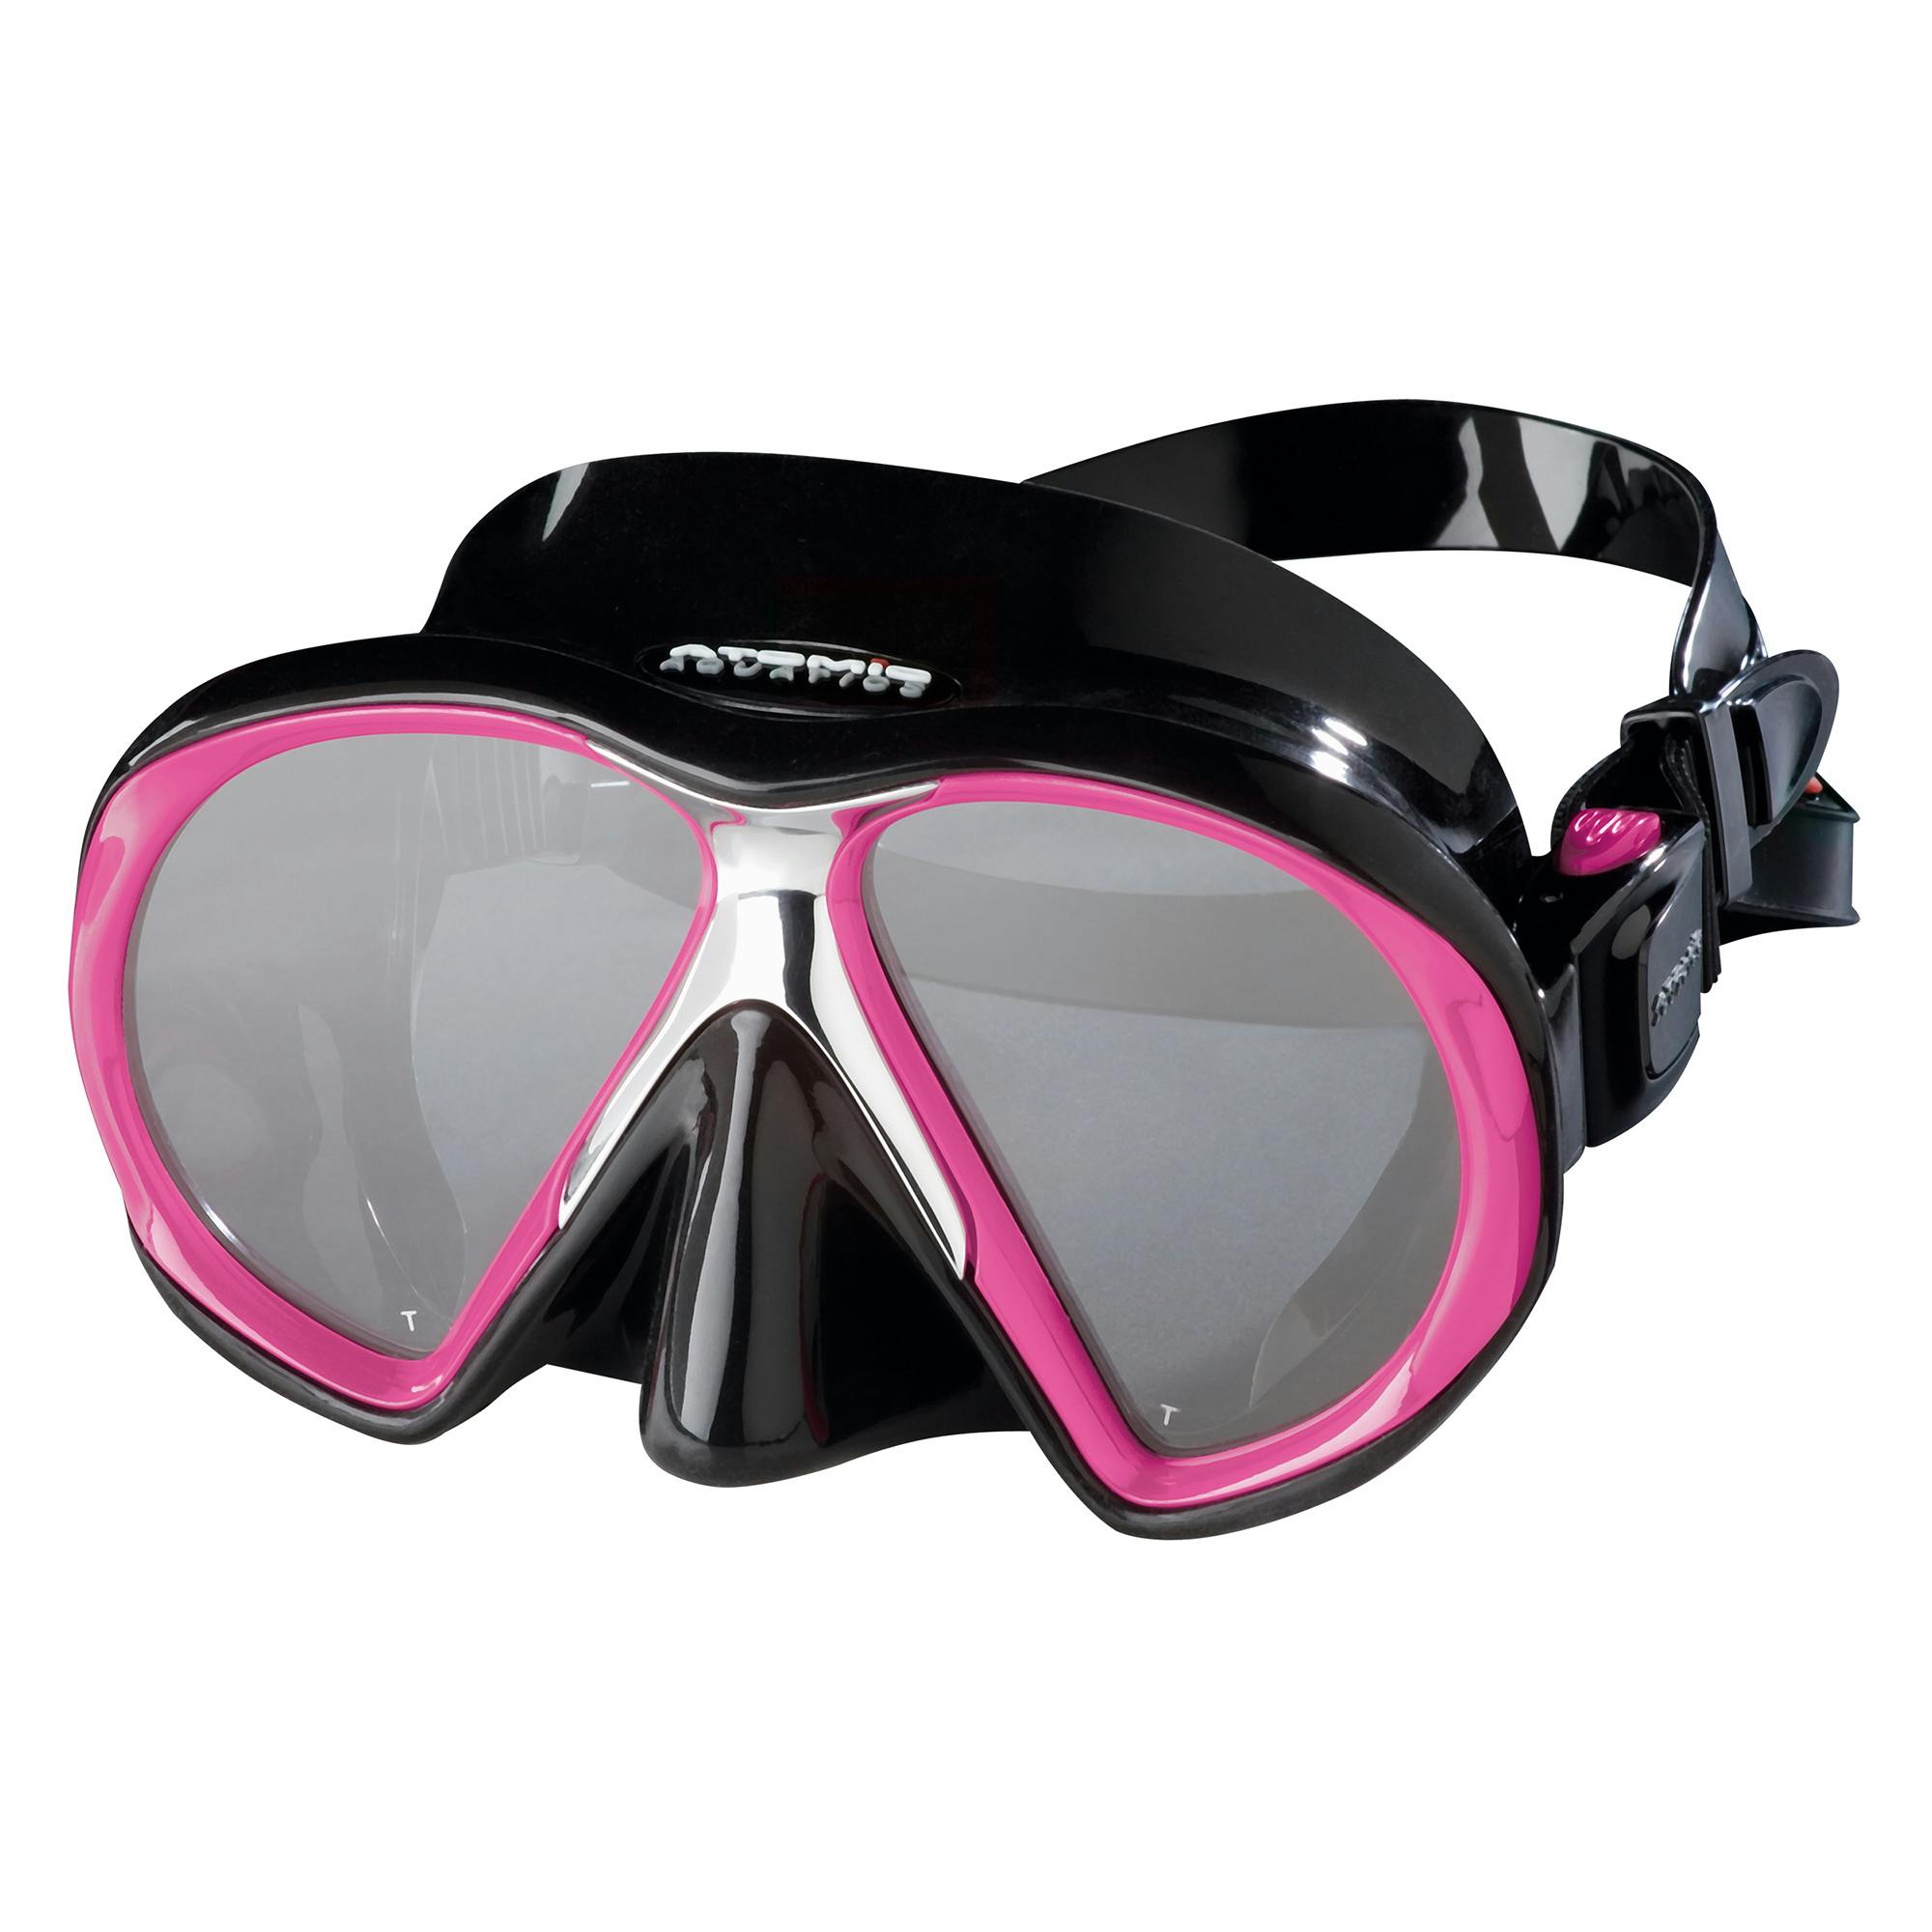 Atomic SubFrame Mask, Two Lens (Medium Fit) - Black Pink